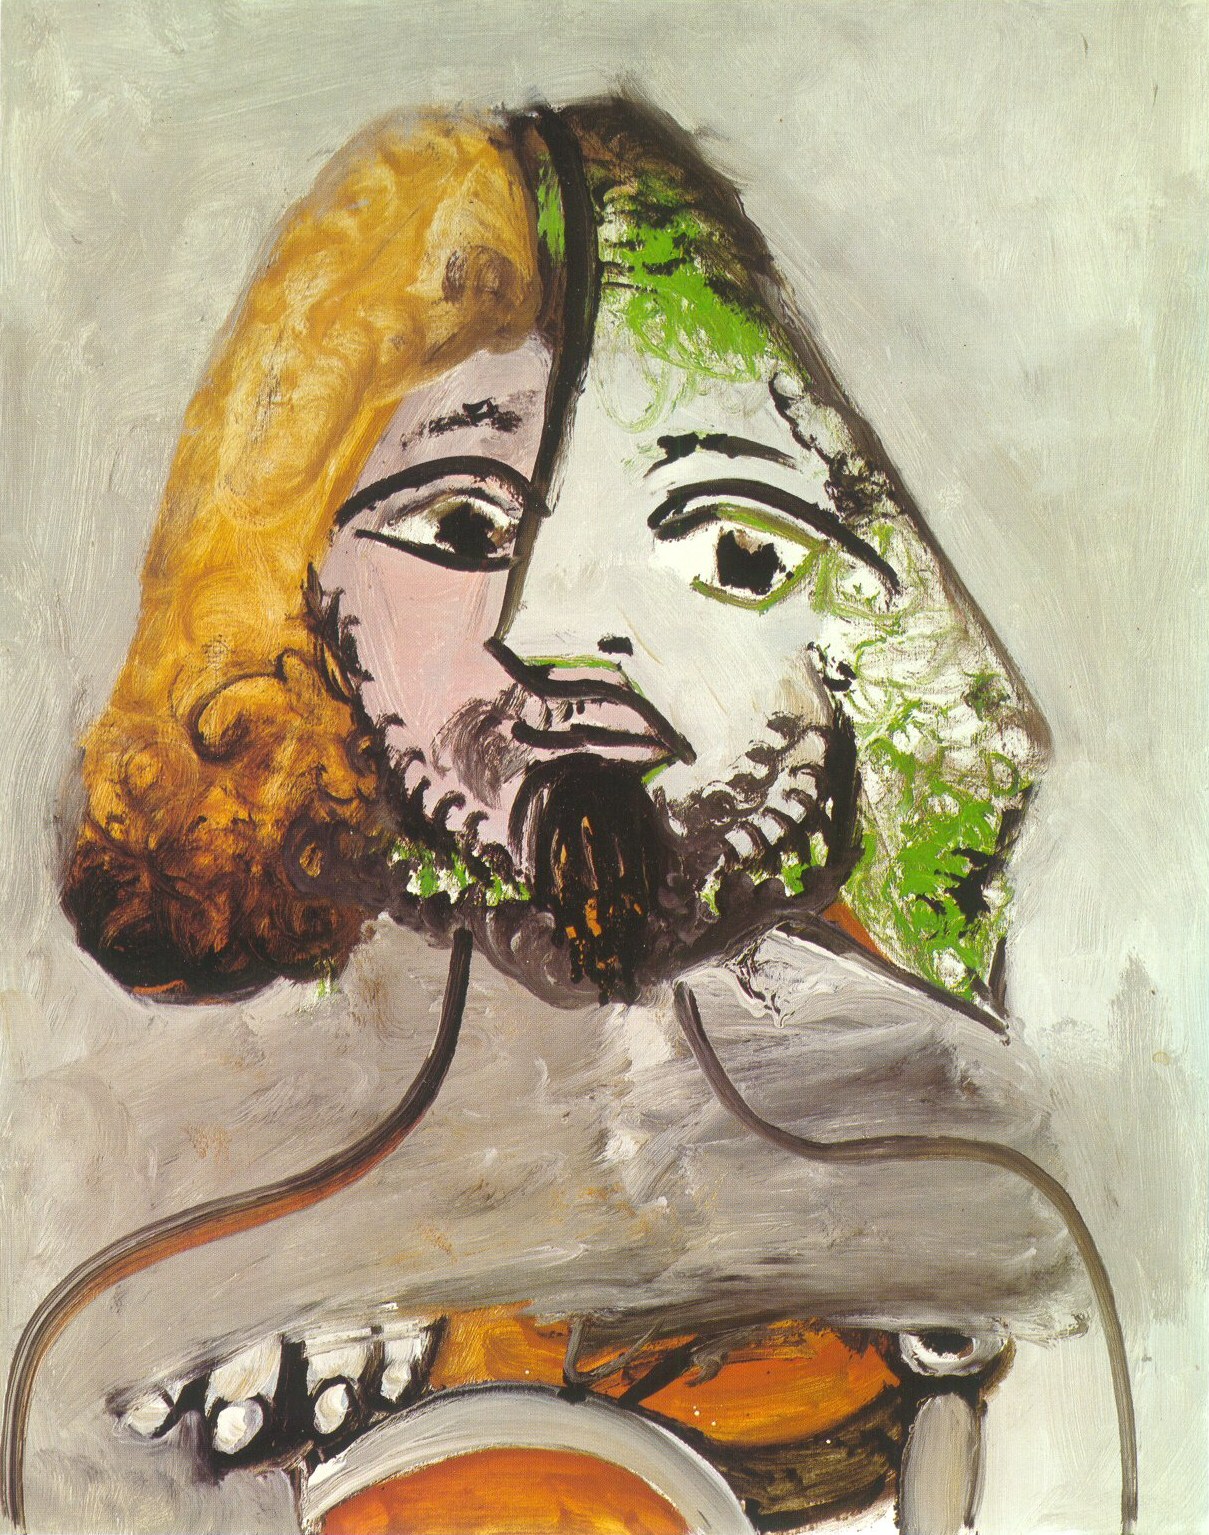 Пабло Пикассо. "Бюст мужчины". 1971.